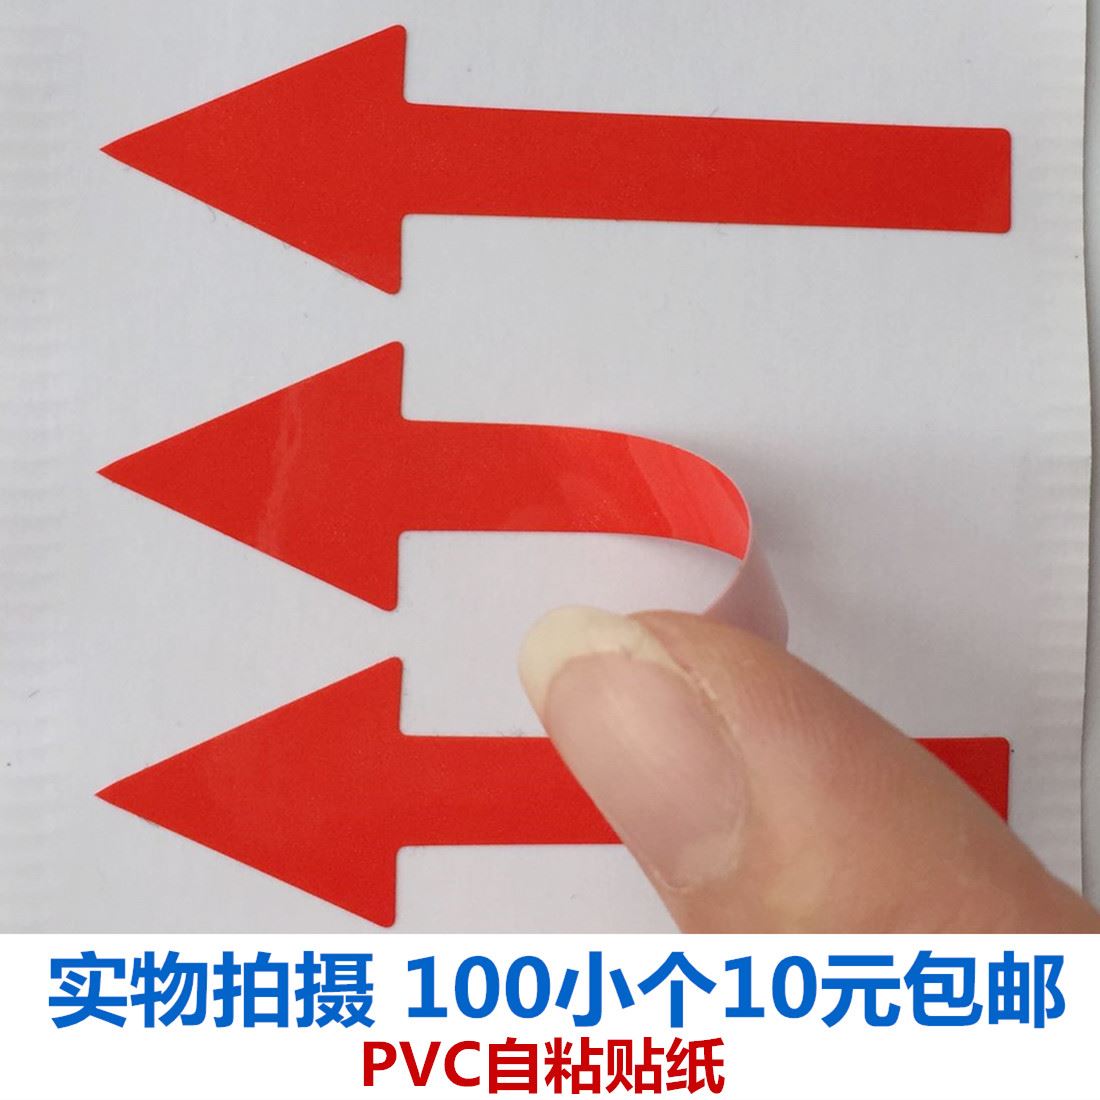 100个9元包邮纯红箭头指示标签输入方向标机器马达运转可弯曲贴纸